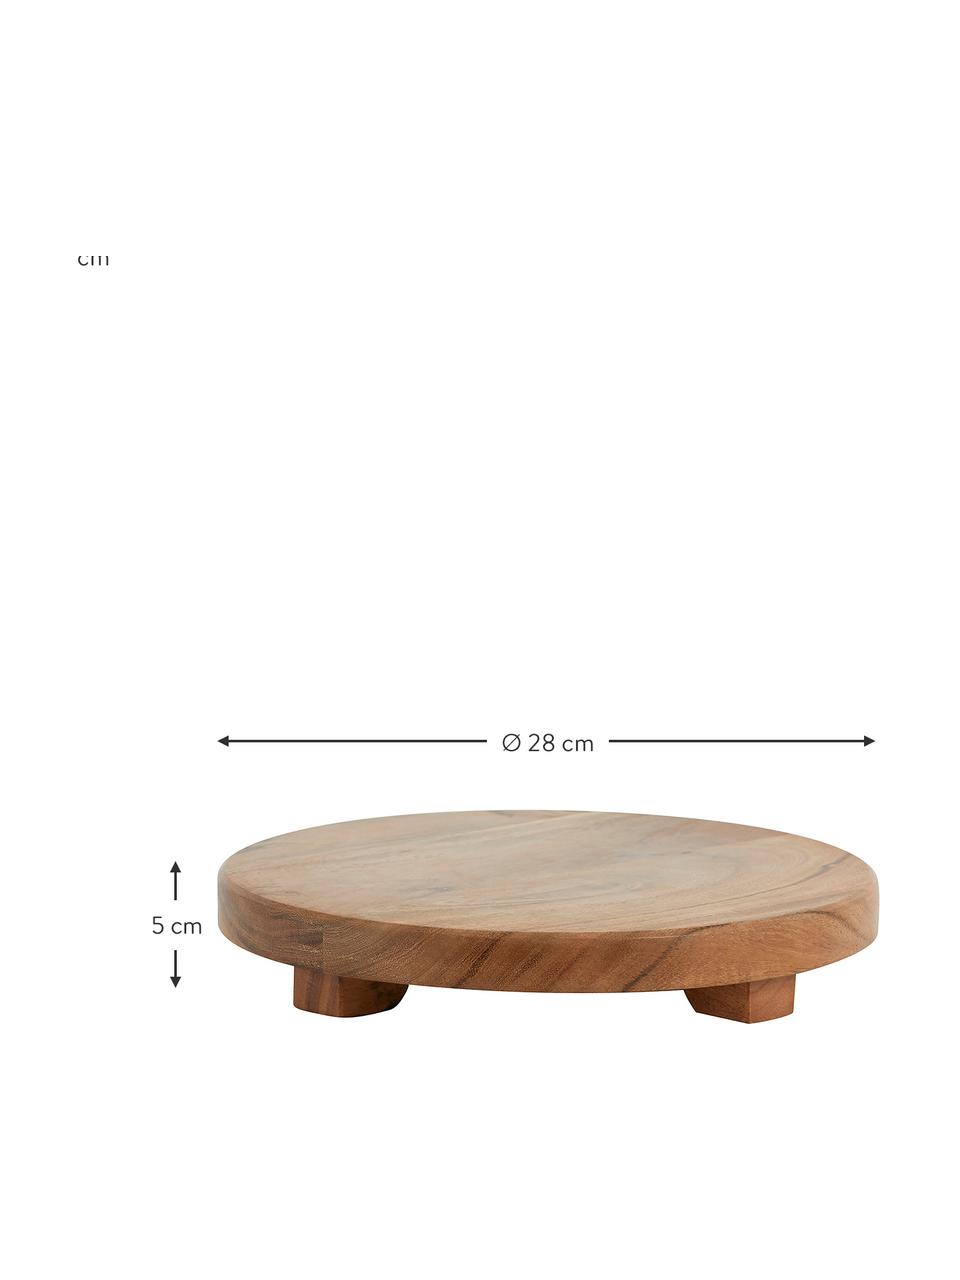 Akazienholz-Servierplatte Safran, verschiedene Größen, Akazienholz, Braun, Ø 28 cm